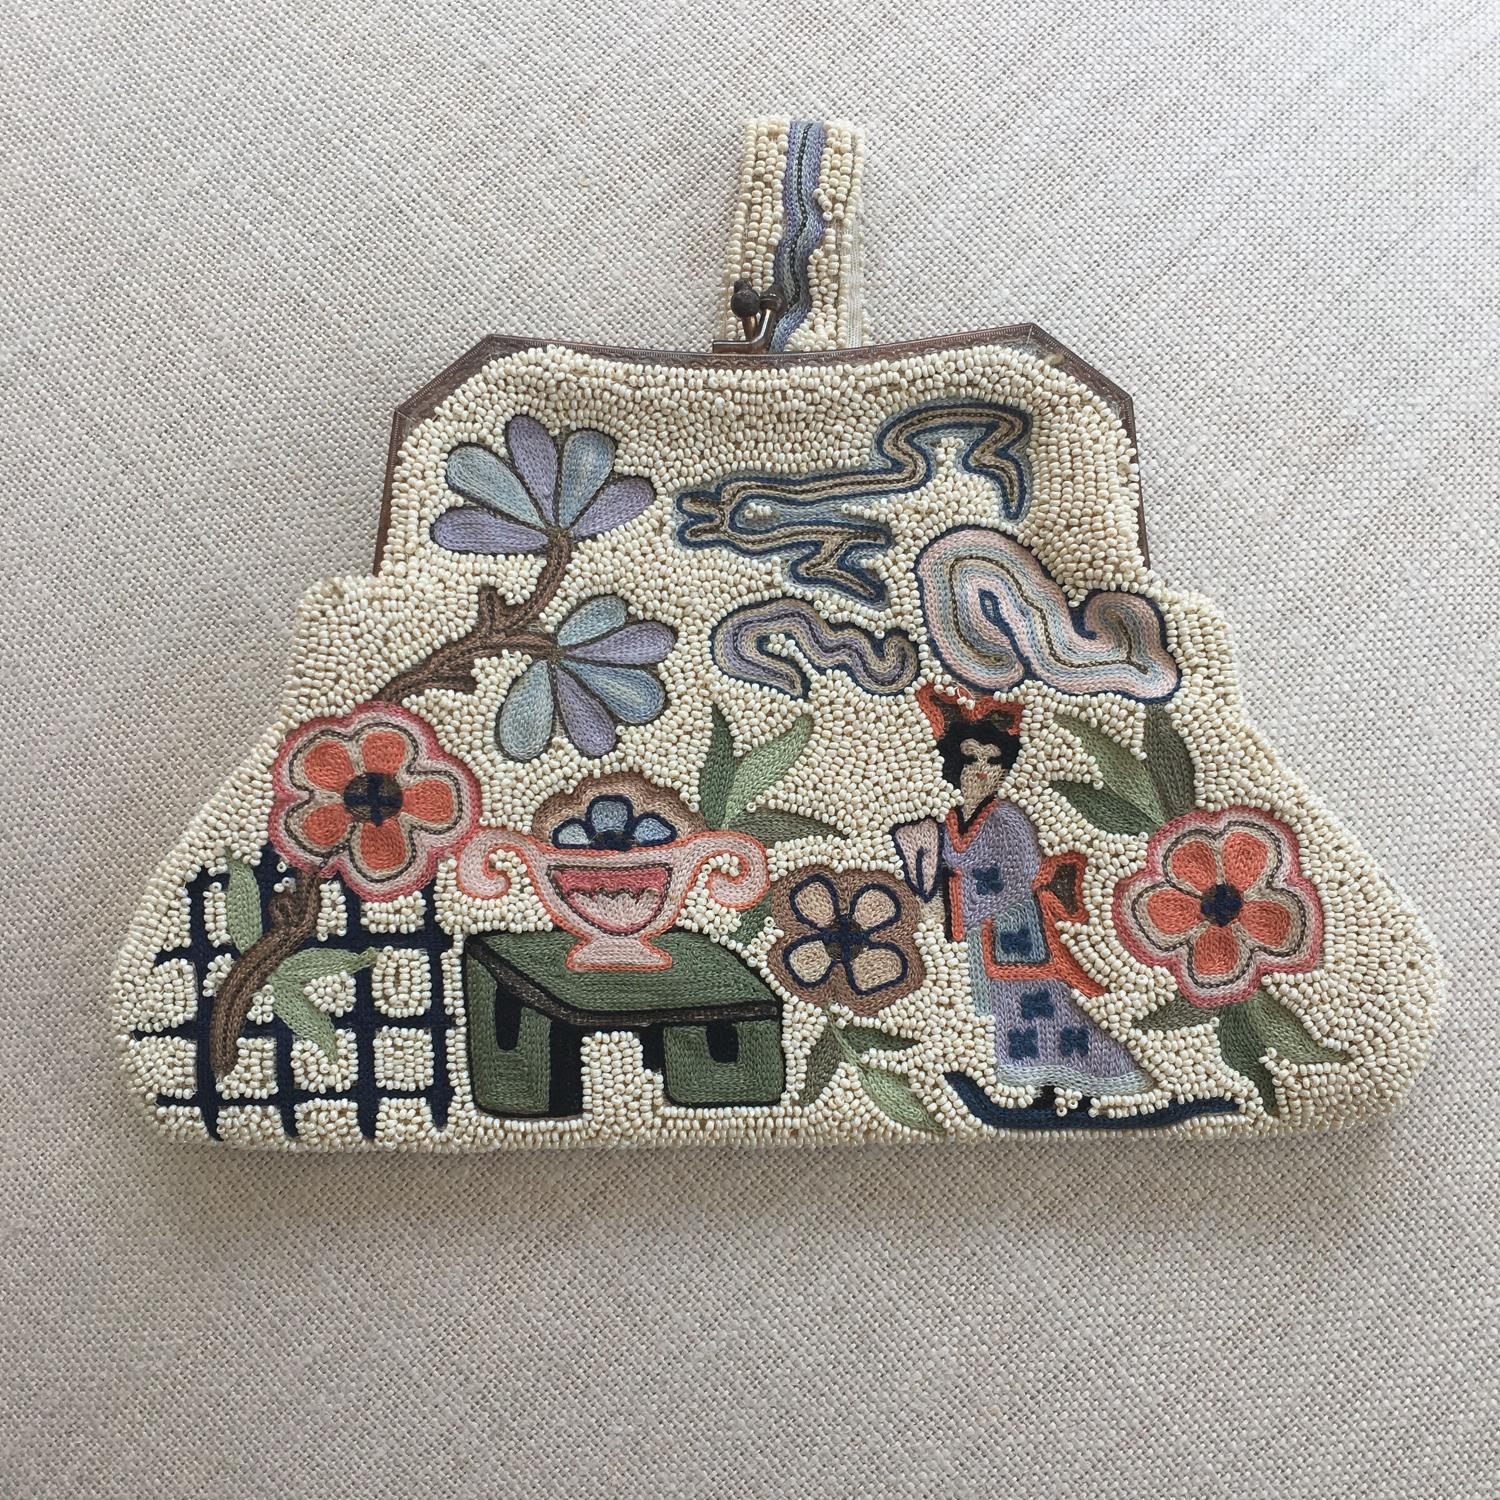 Vintage beaded handbag